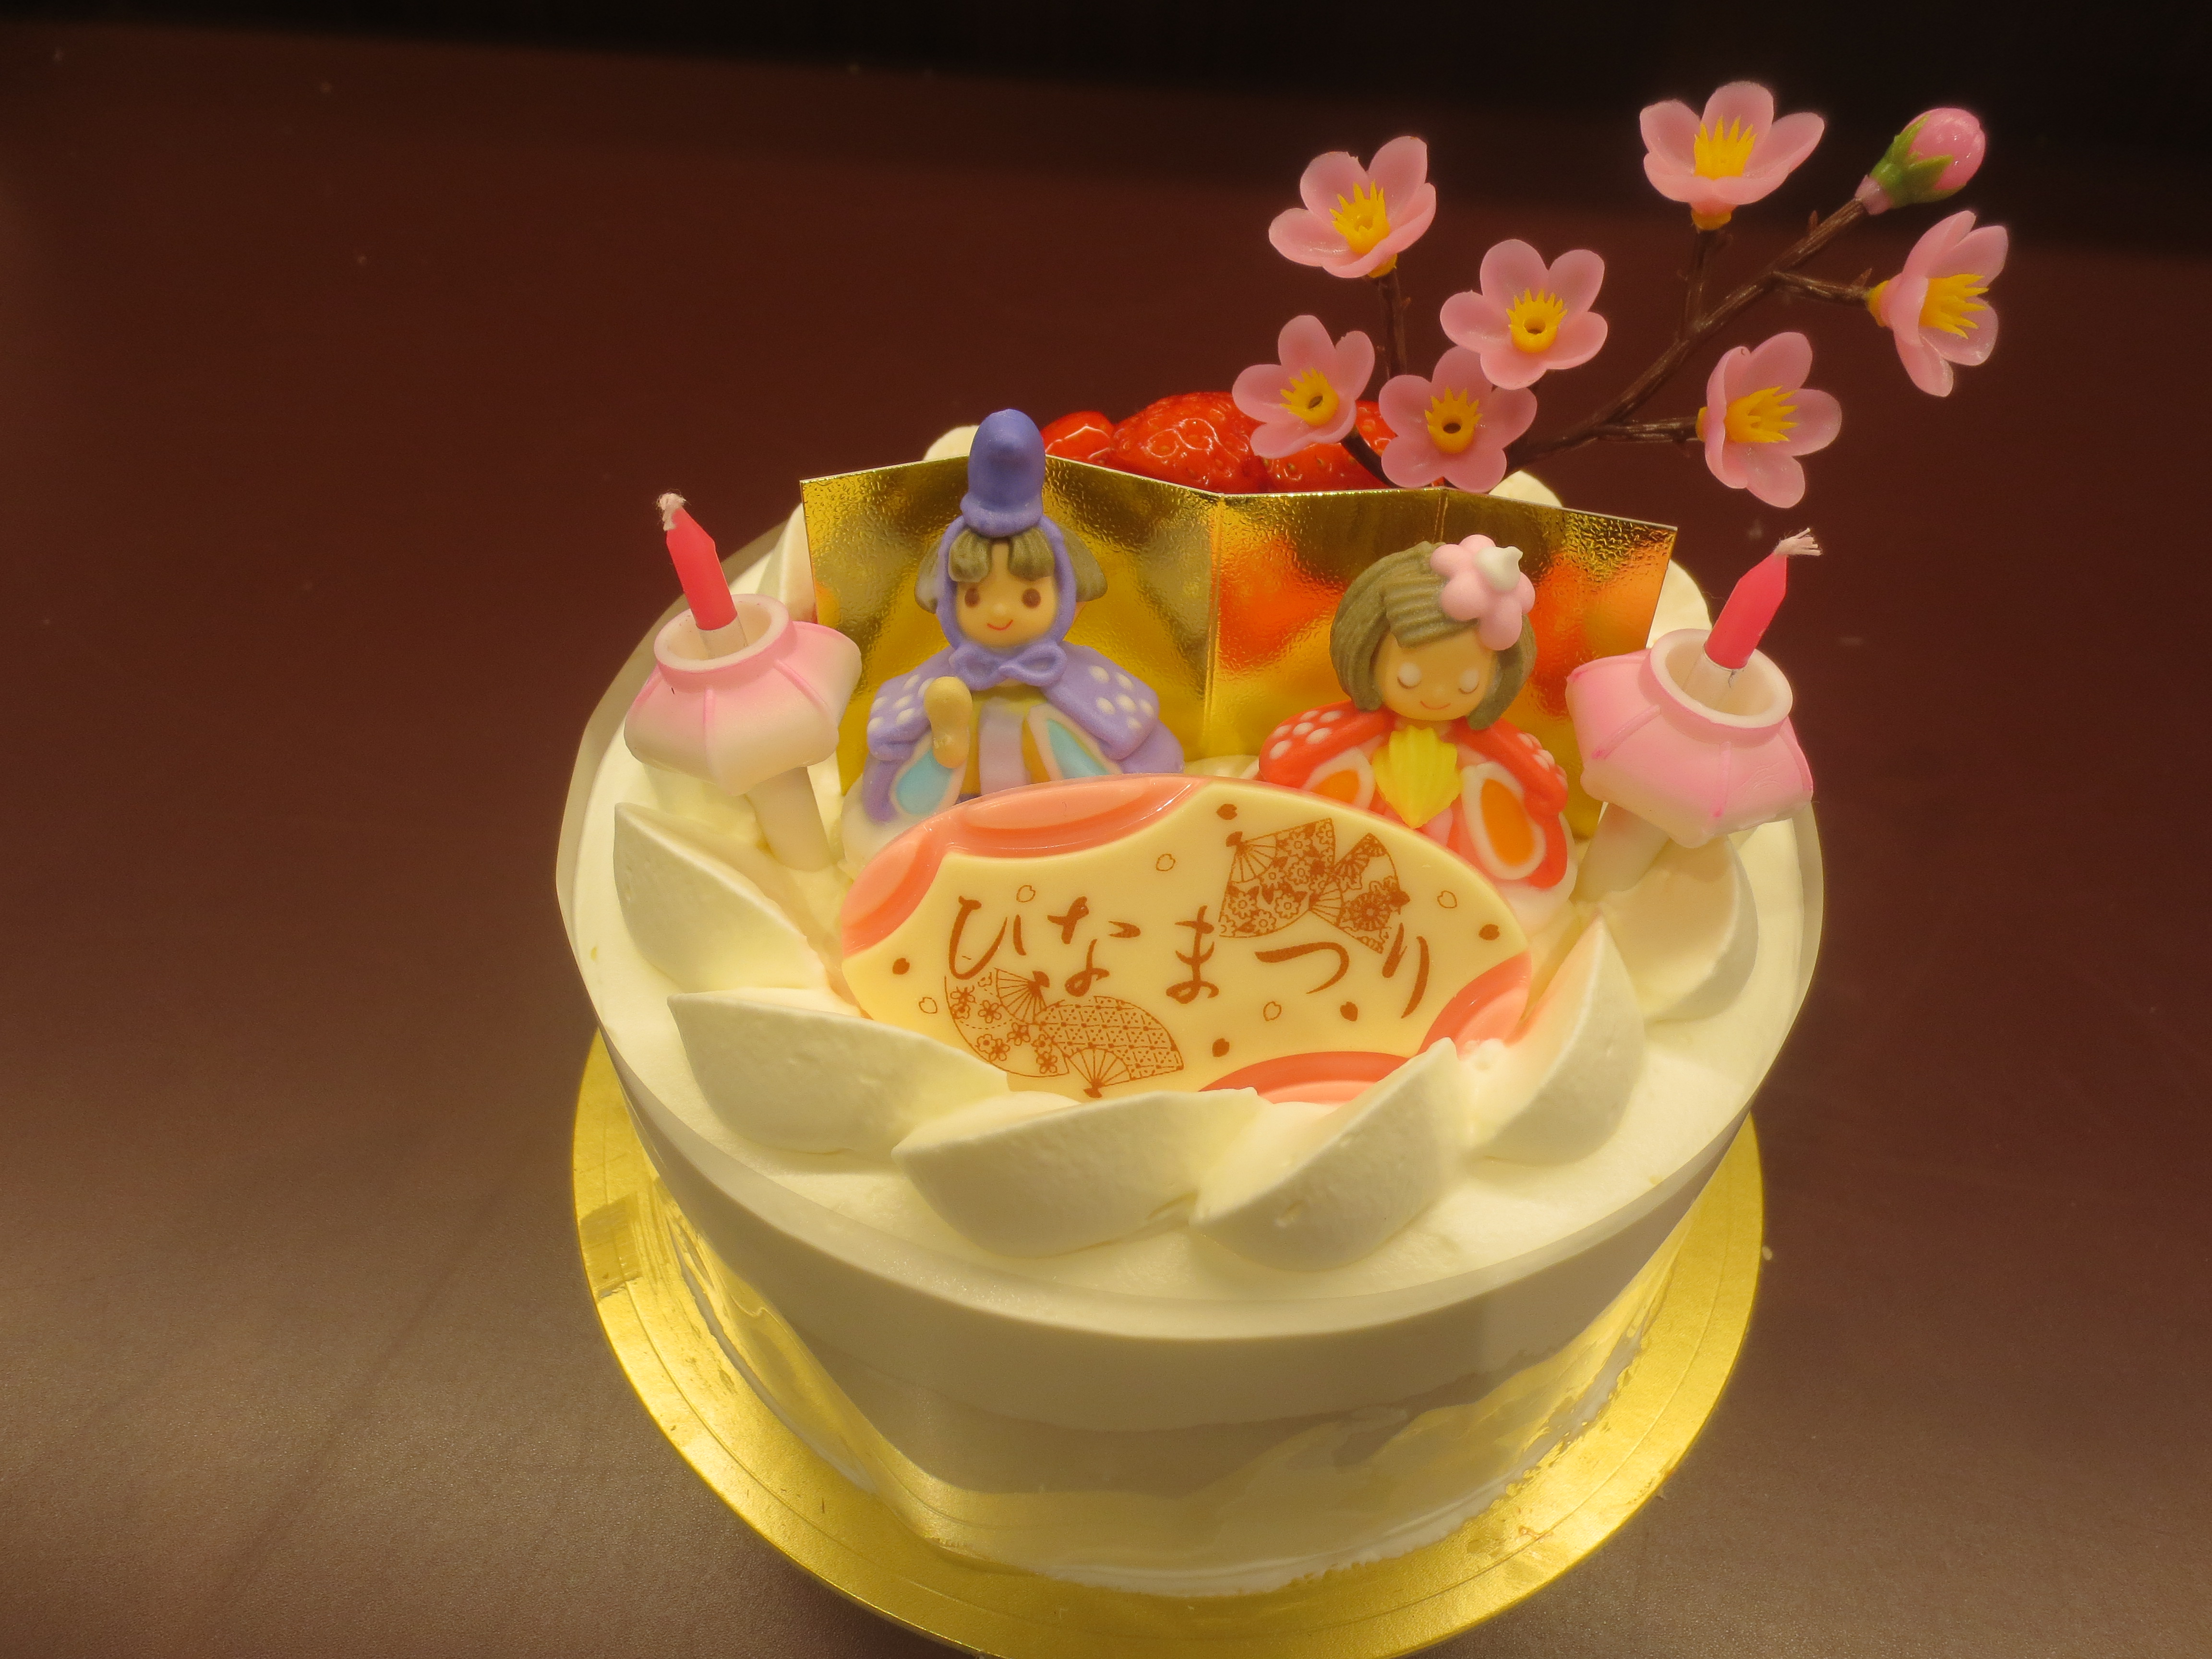 かわいいひなまつりケーキは小倉のアラモードへ 焼き菓子の通販は北九州市小倉のフランス洋菓子店 アラモード